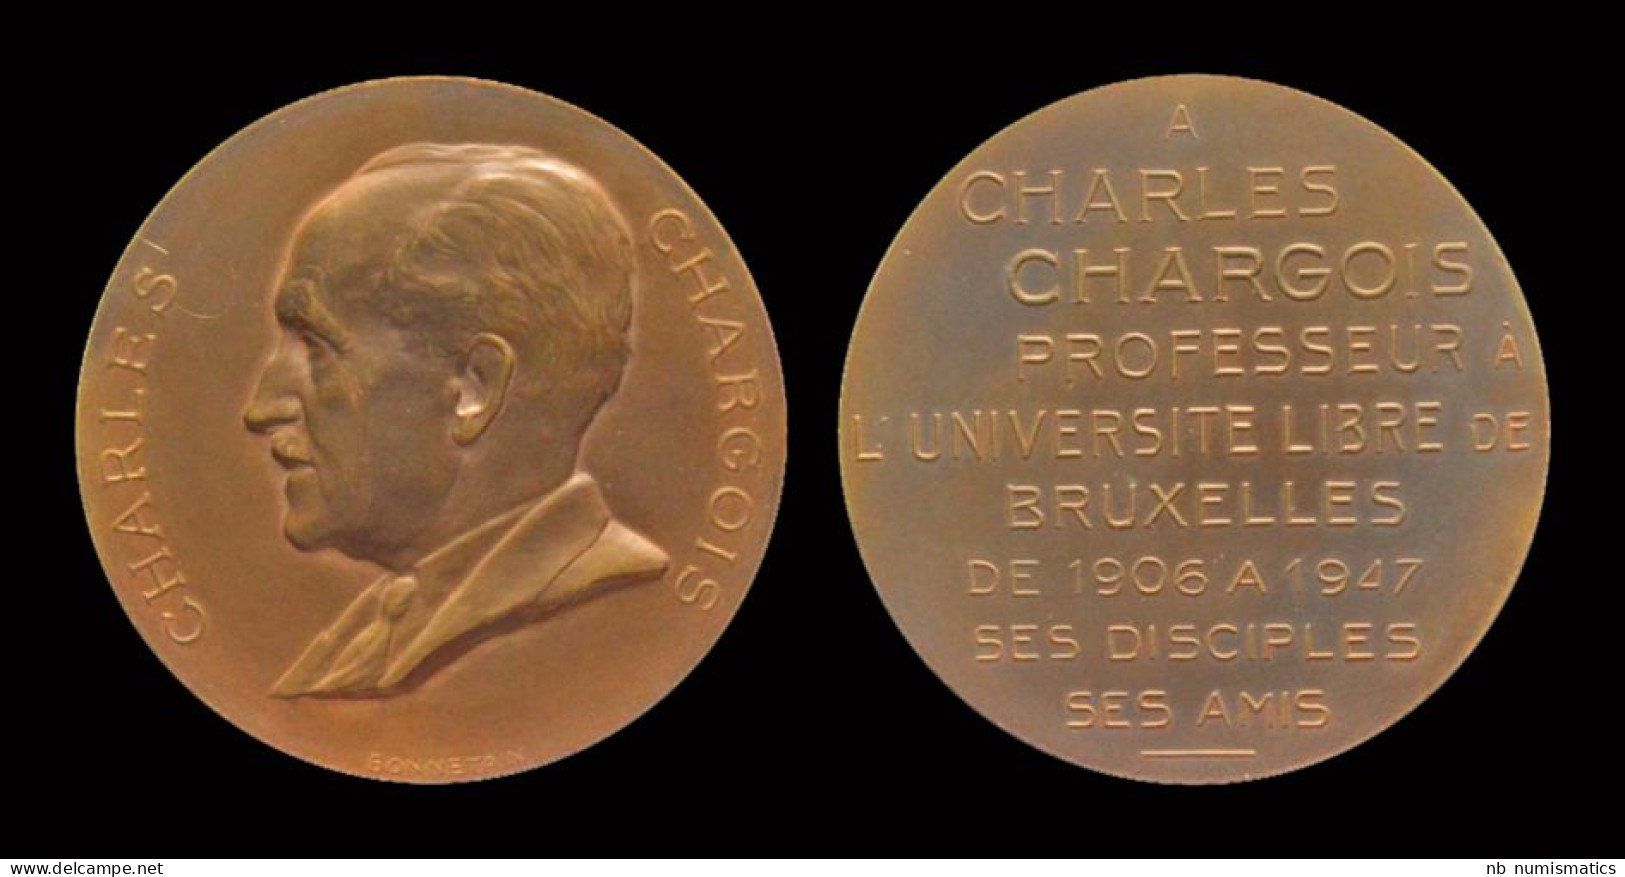 Belgium Bonnetain Armand, Medaille Charles Chargois - Royaux / De Noblesse